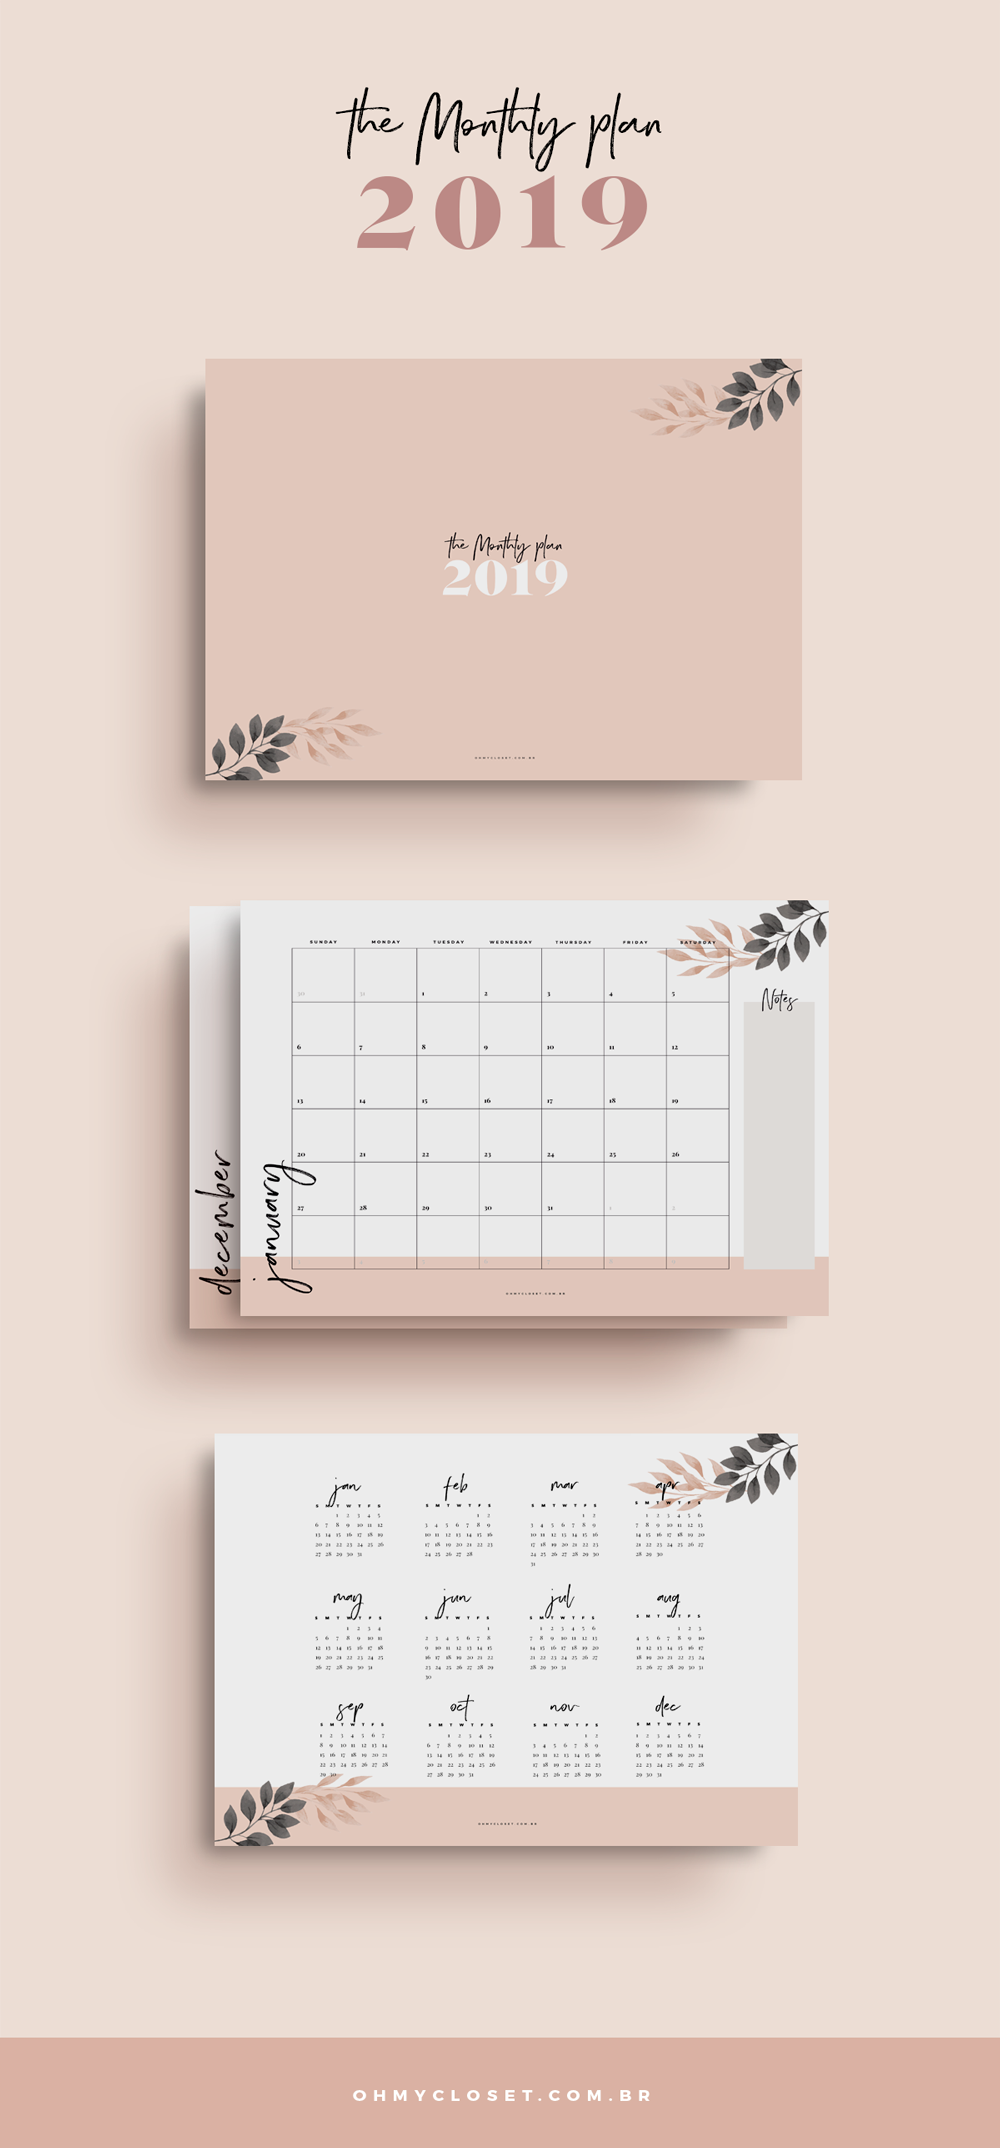 Planner Mensal 2019 do Oh My Closet grátis para baixar e imprimir.